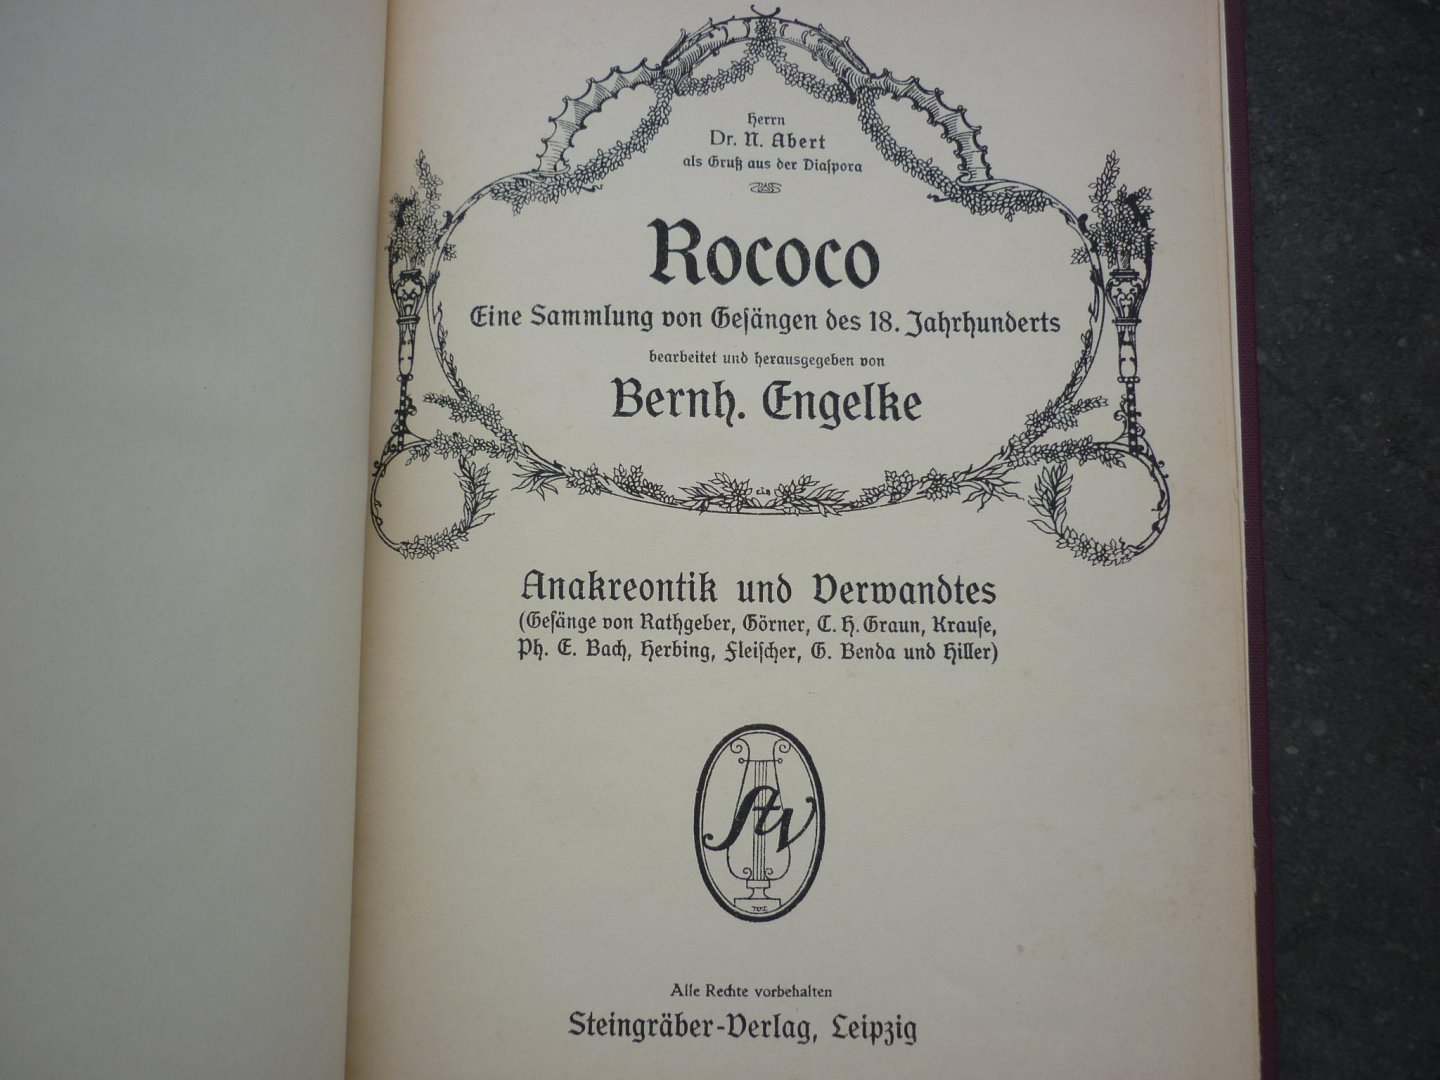 Div. Componisten - ROCOCO - Eine sammlung von Gesängen des 18. Jahrhunderts; Liedersammlung mit Klavierbegleitung; (bearbeitet und herausgegeben von Bernhard Engelke)